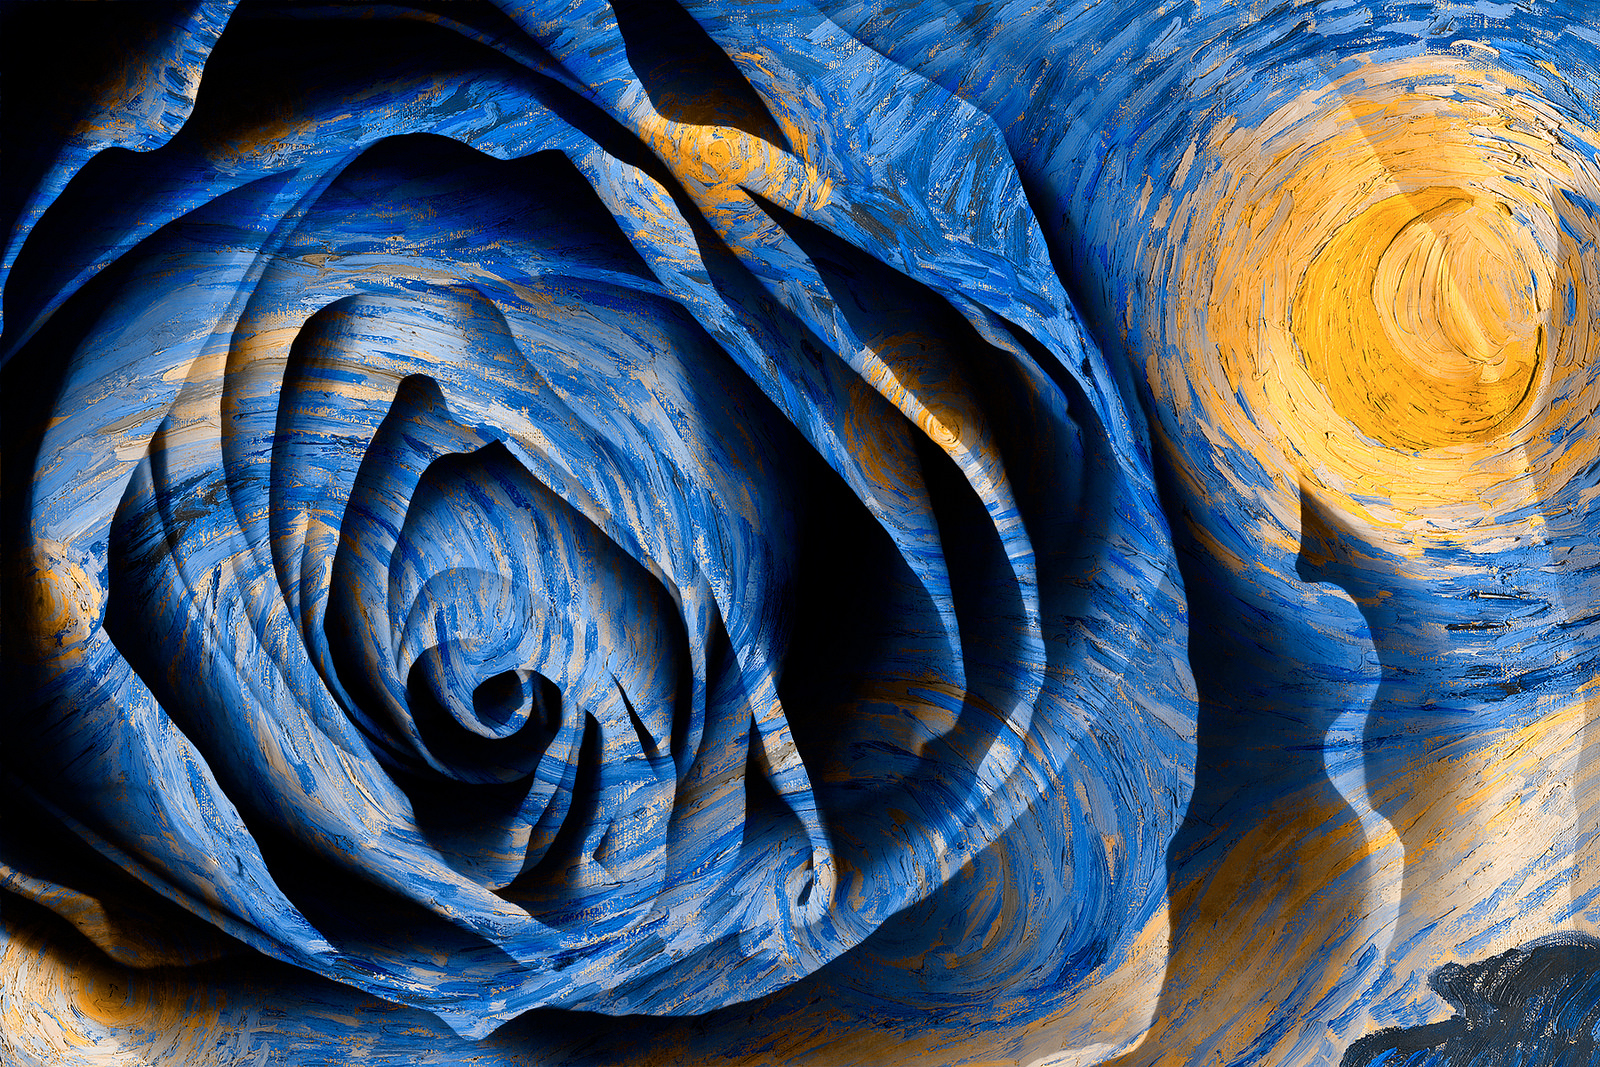 Starry Night Rose - Hybrid Oil & HDR